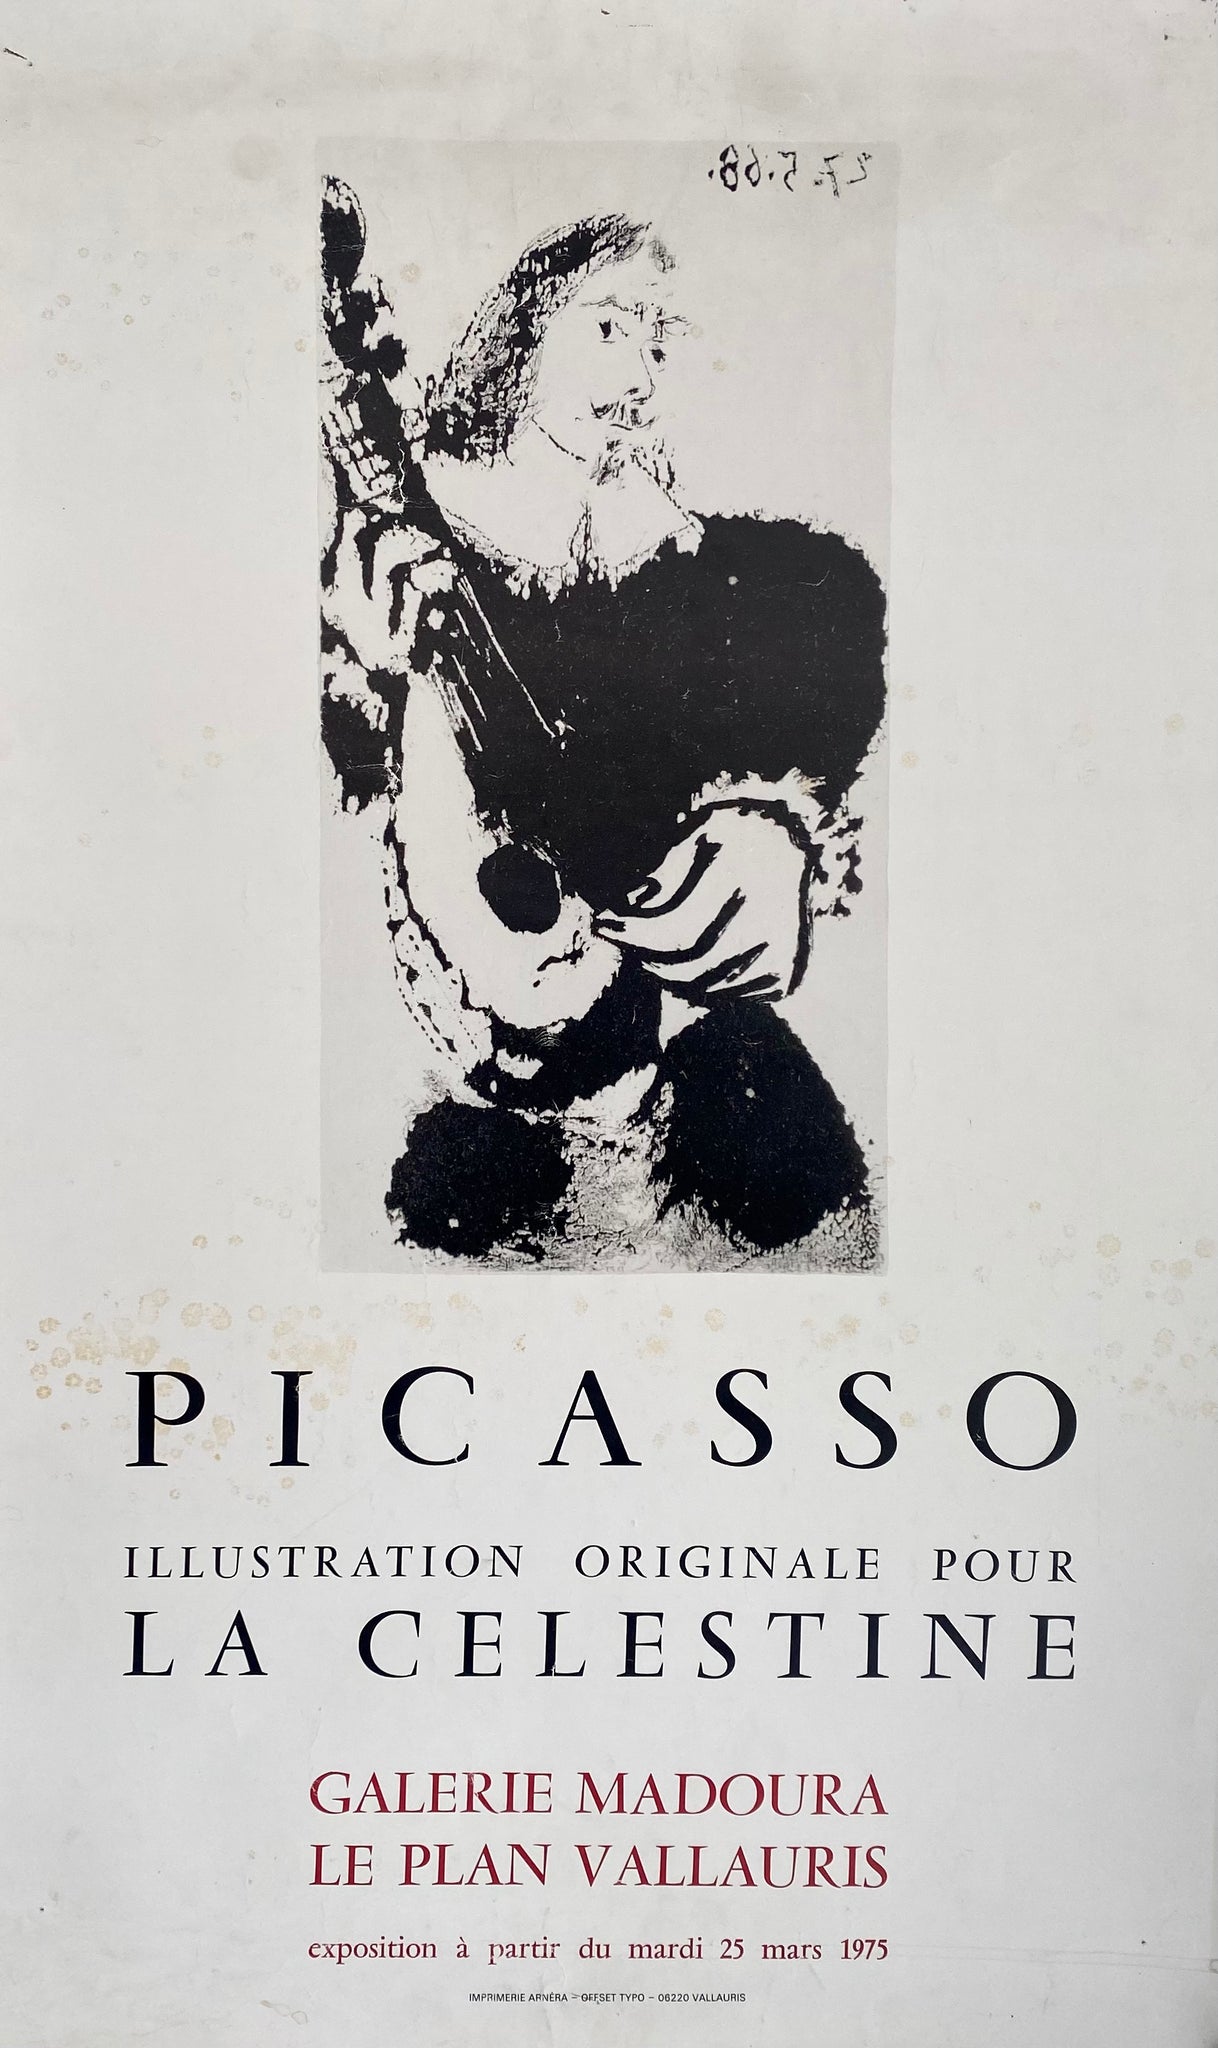 Affiche galerie Madoura - La Celestine Par Pablo Picasso, 1975